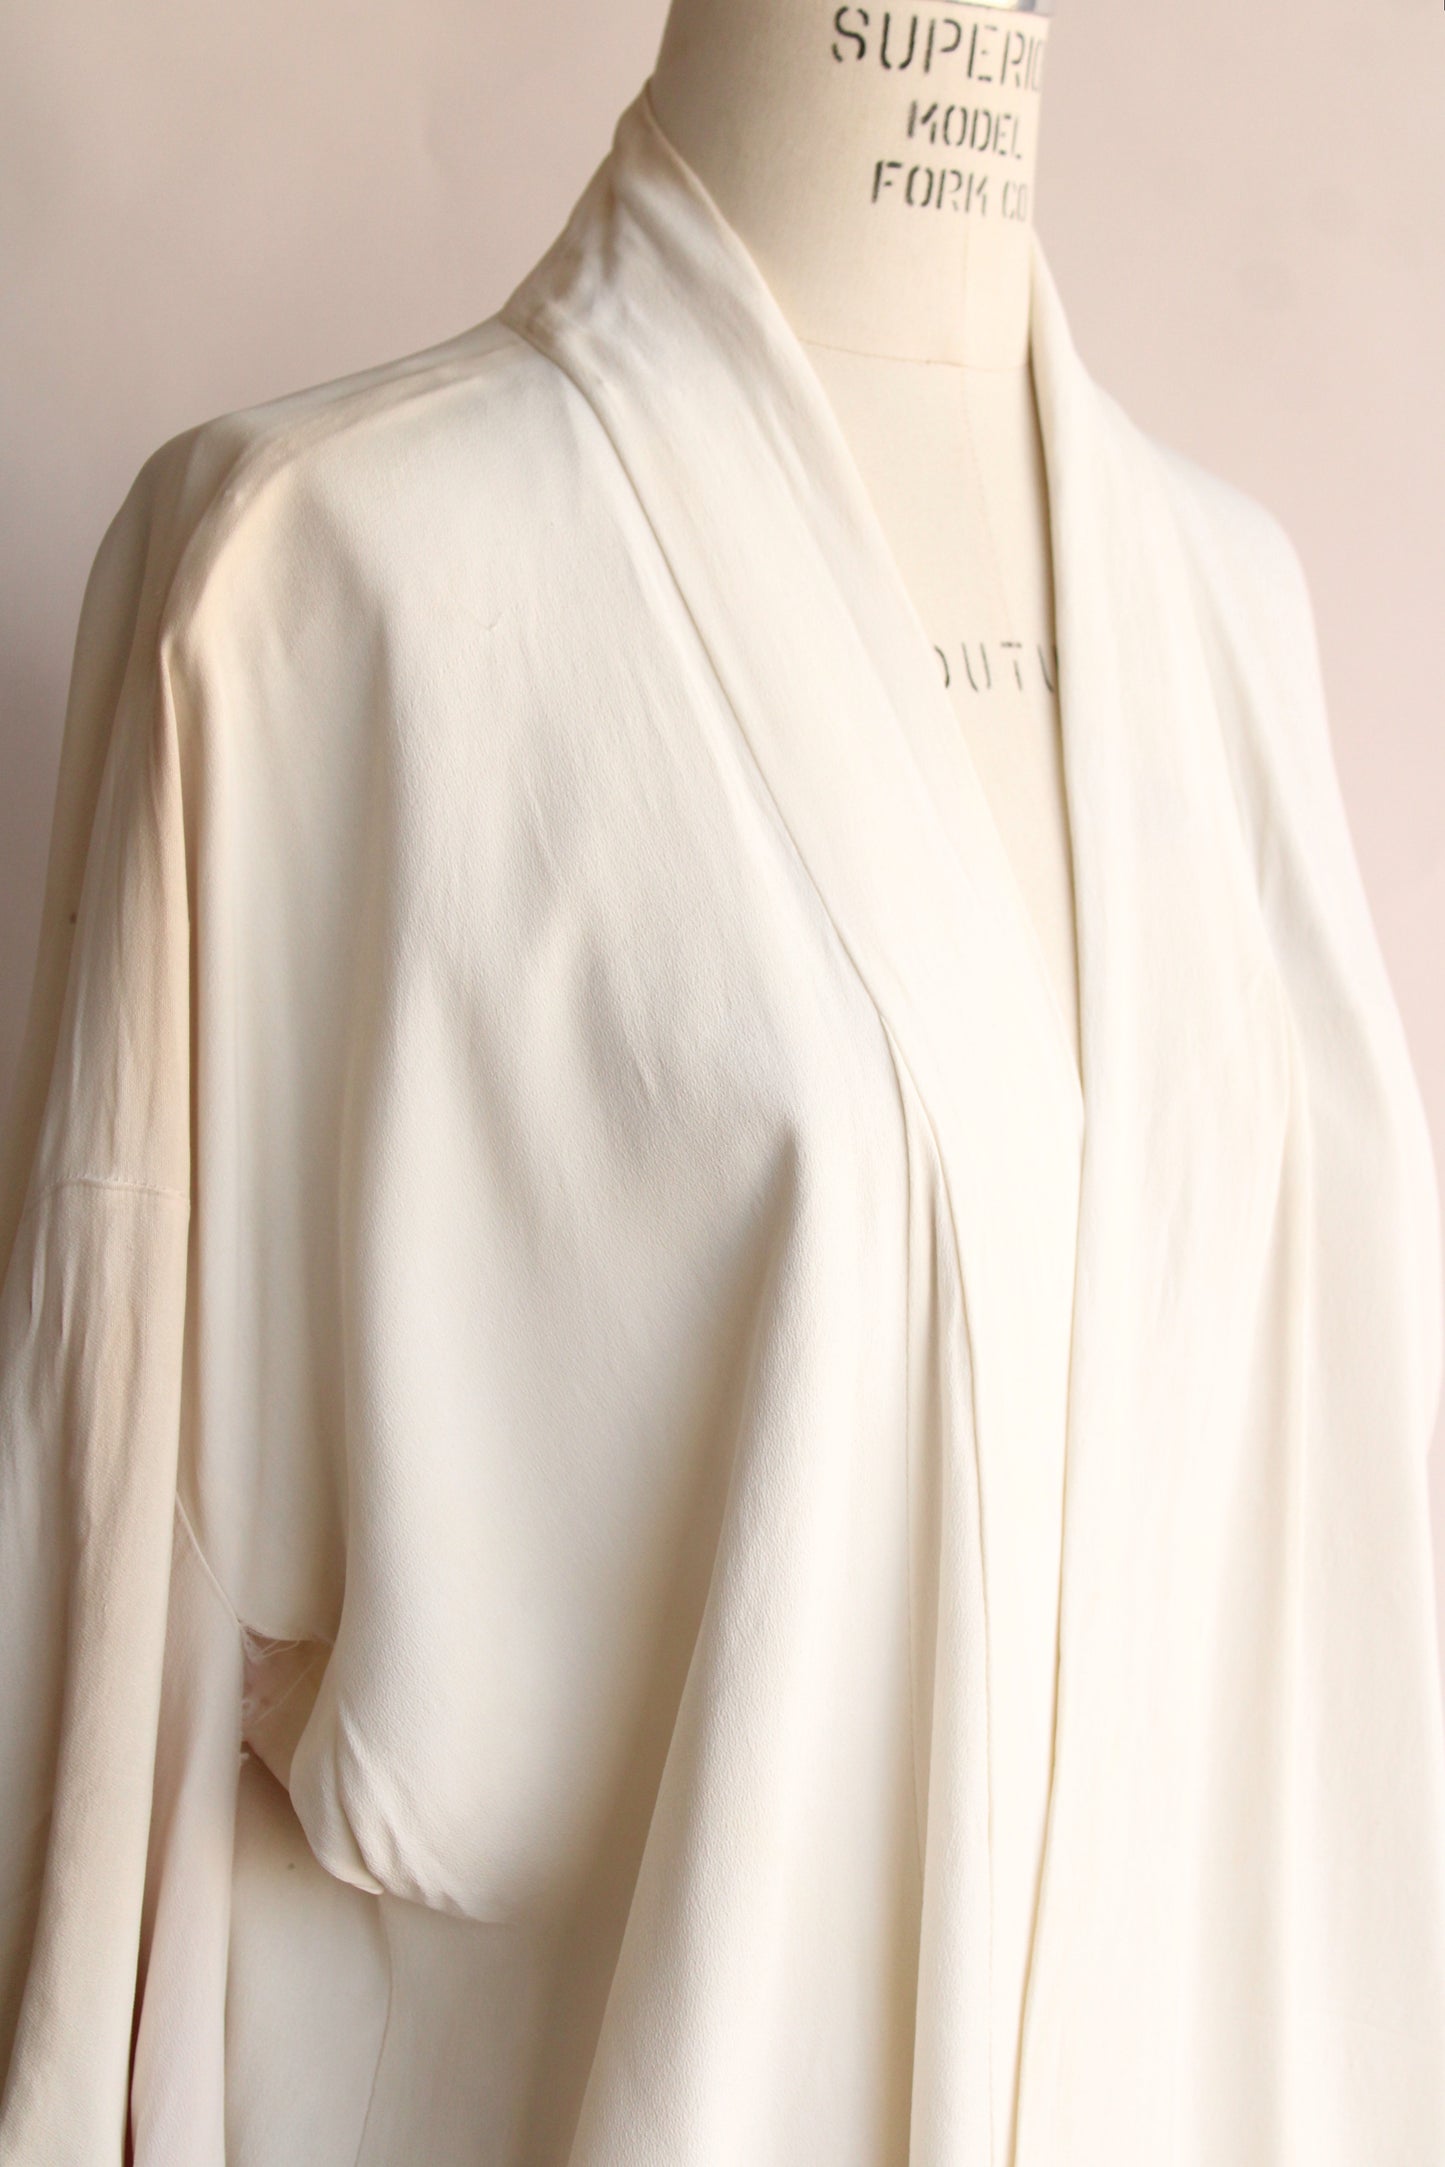 Vintage Short Kimono Haori Hollywood Costume in White Rayon